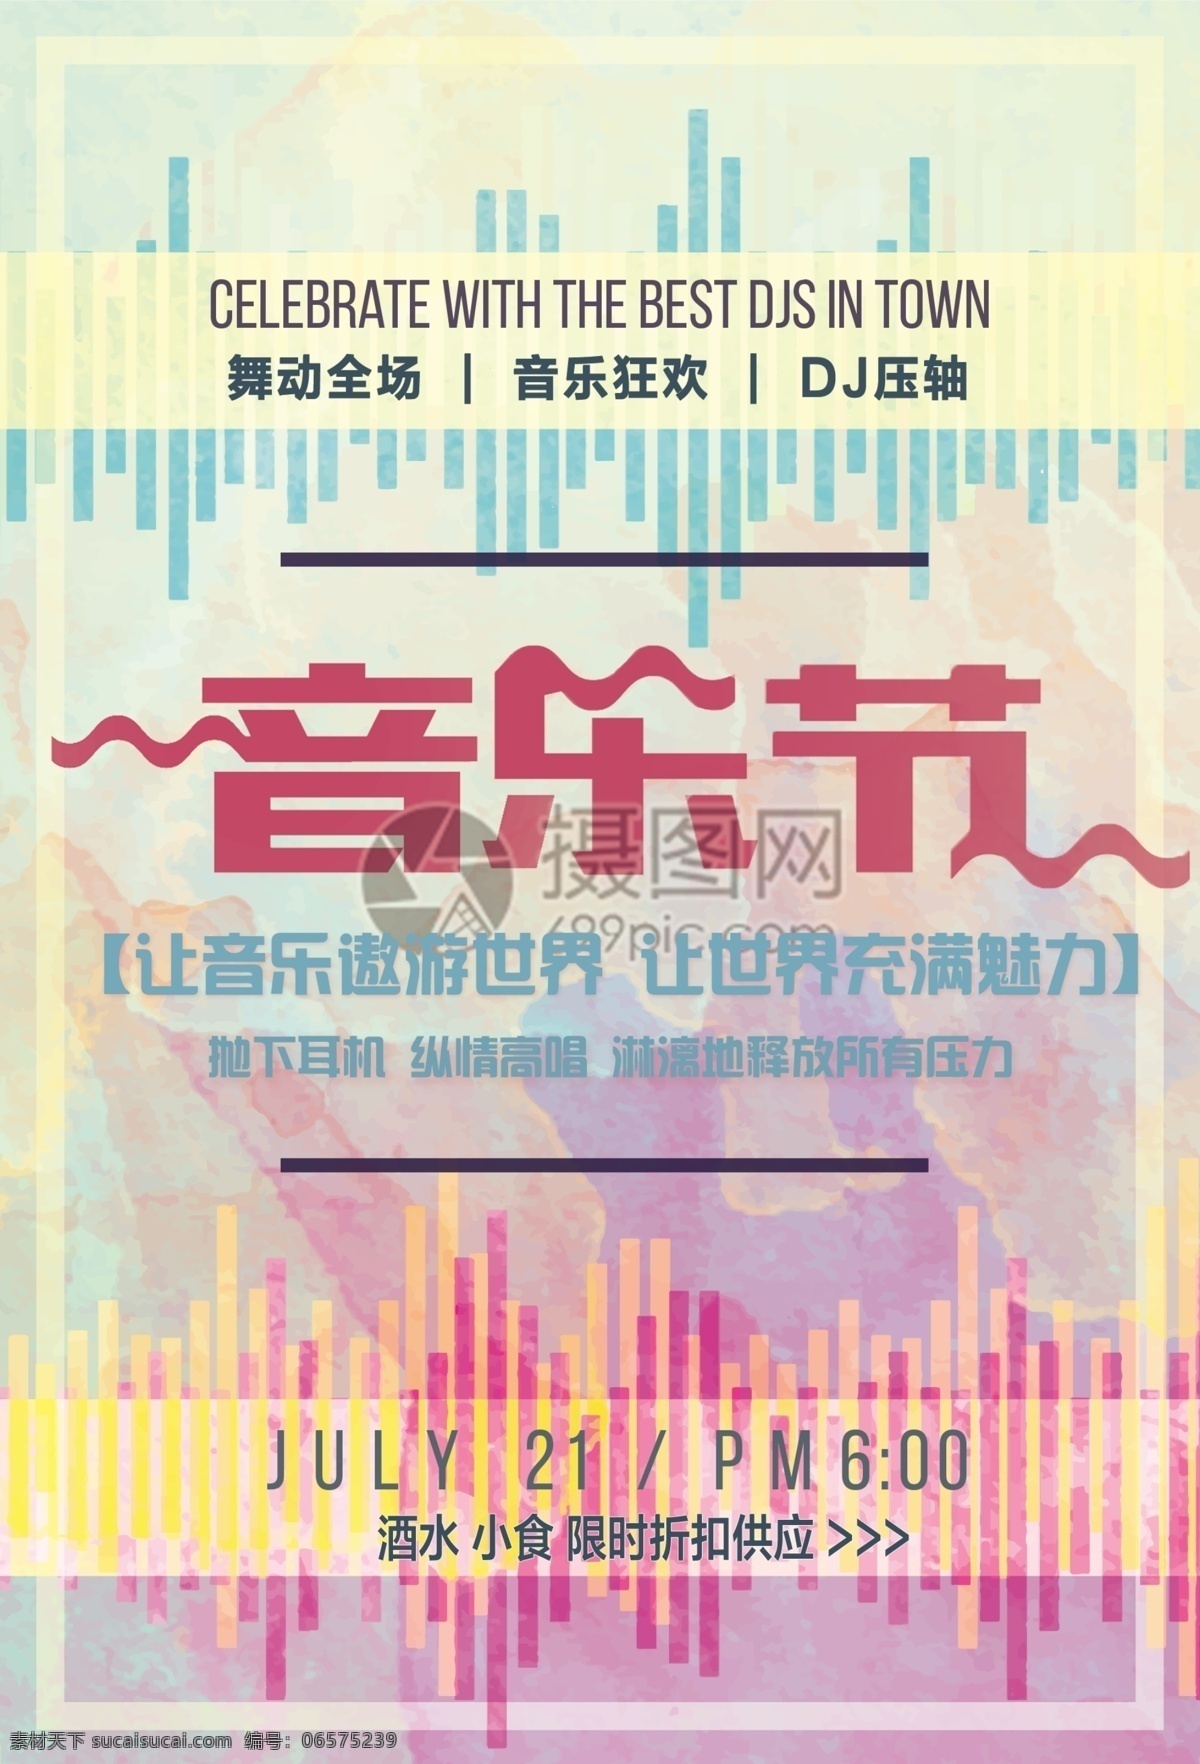 复古 音乐节 宣传海报 音乐 音乐派对 party 音乐嘉年华 狂欢节 享受音乐 海报